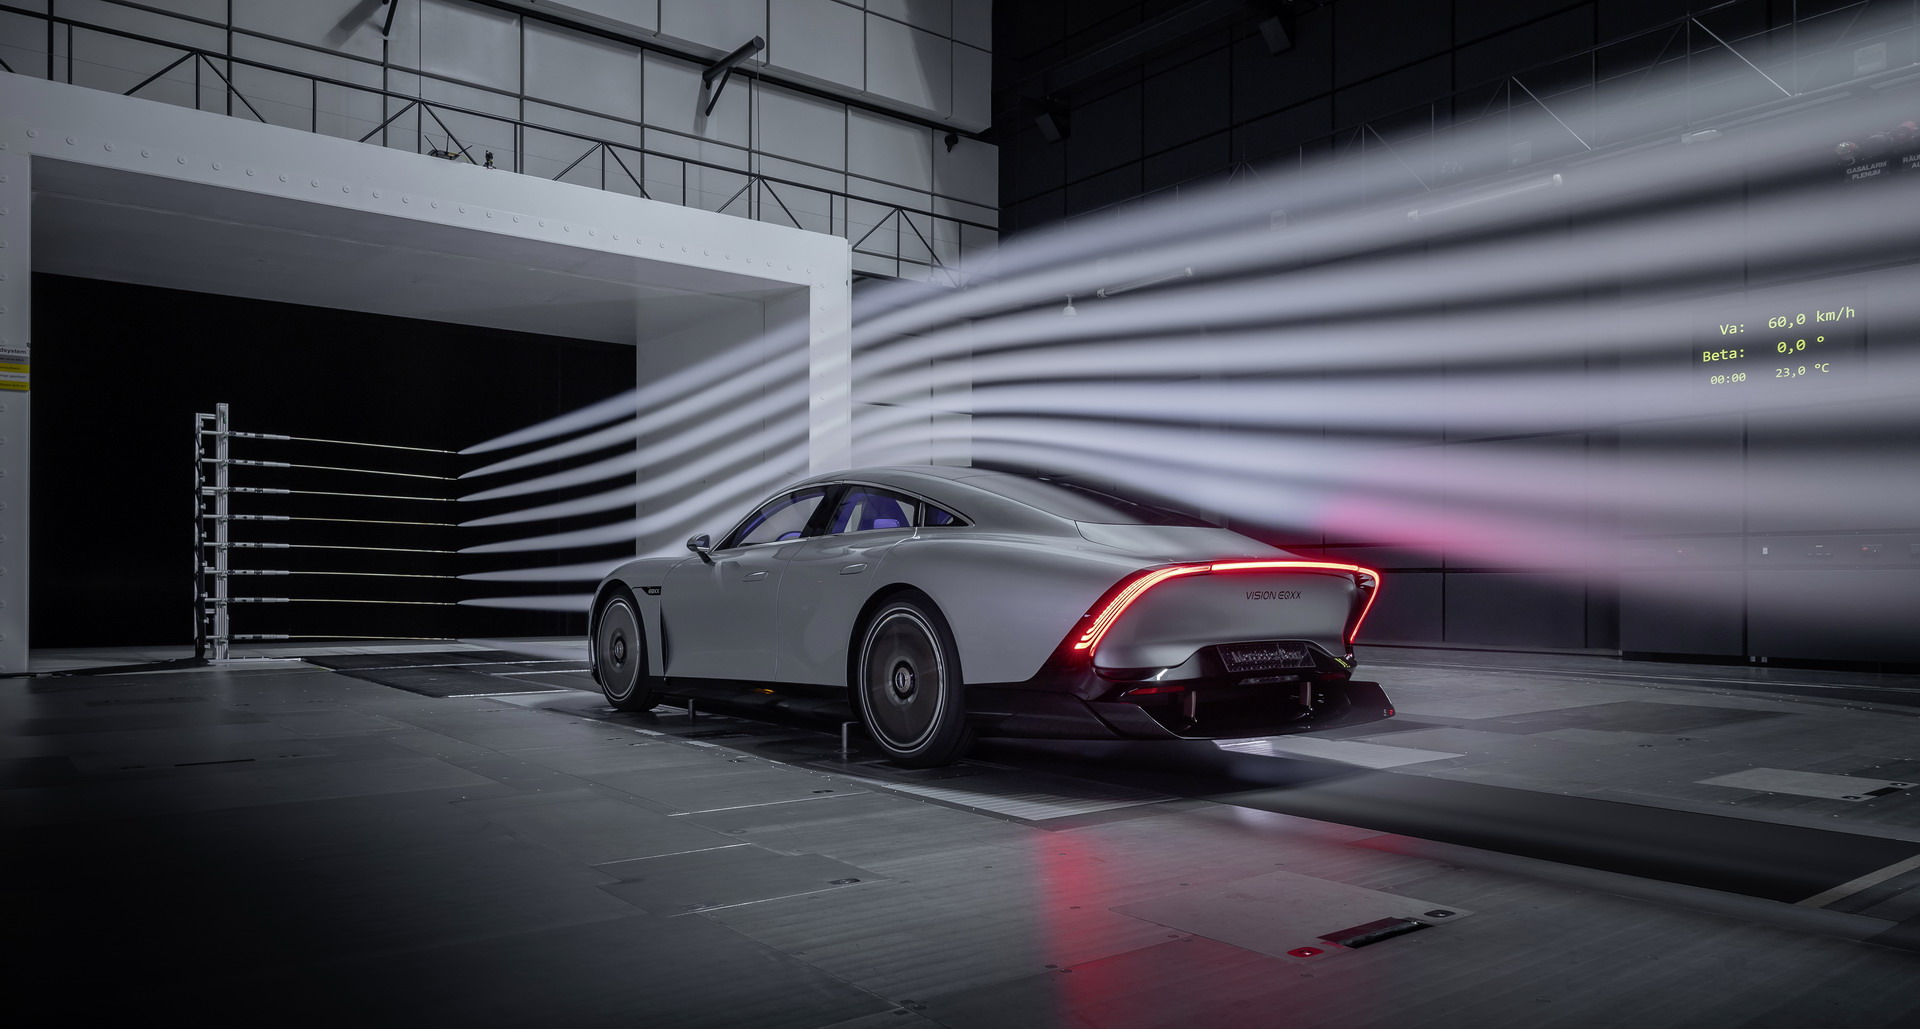 Siêu phẩm Mercedes-Benz sẽ nằm cùng sàn trưng bày 3 xe VinFast mới: Màn hình cảm ứng siêu rộng, sạc một lần chạy 1.000 km - Ảnh 2.